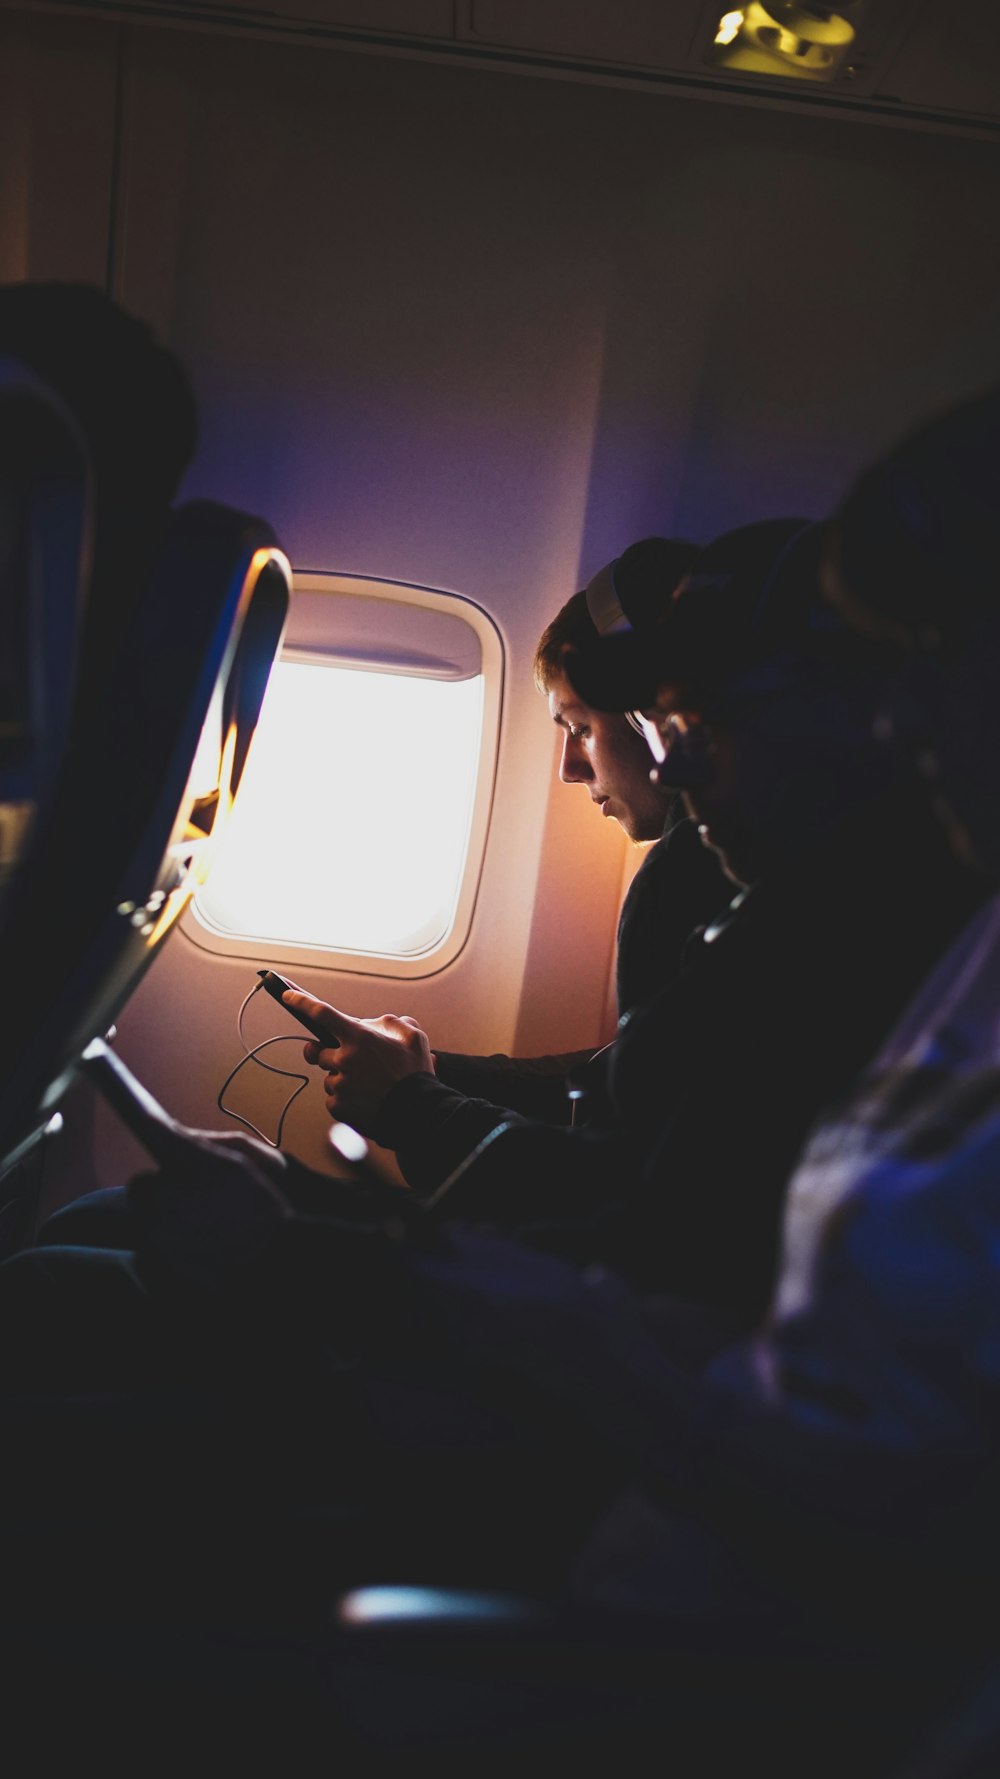 비행기 안에서 음악을 듣고 있는 세 사람의 사진